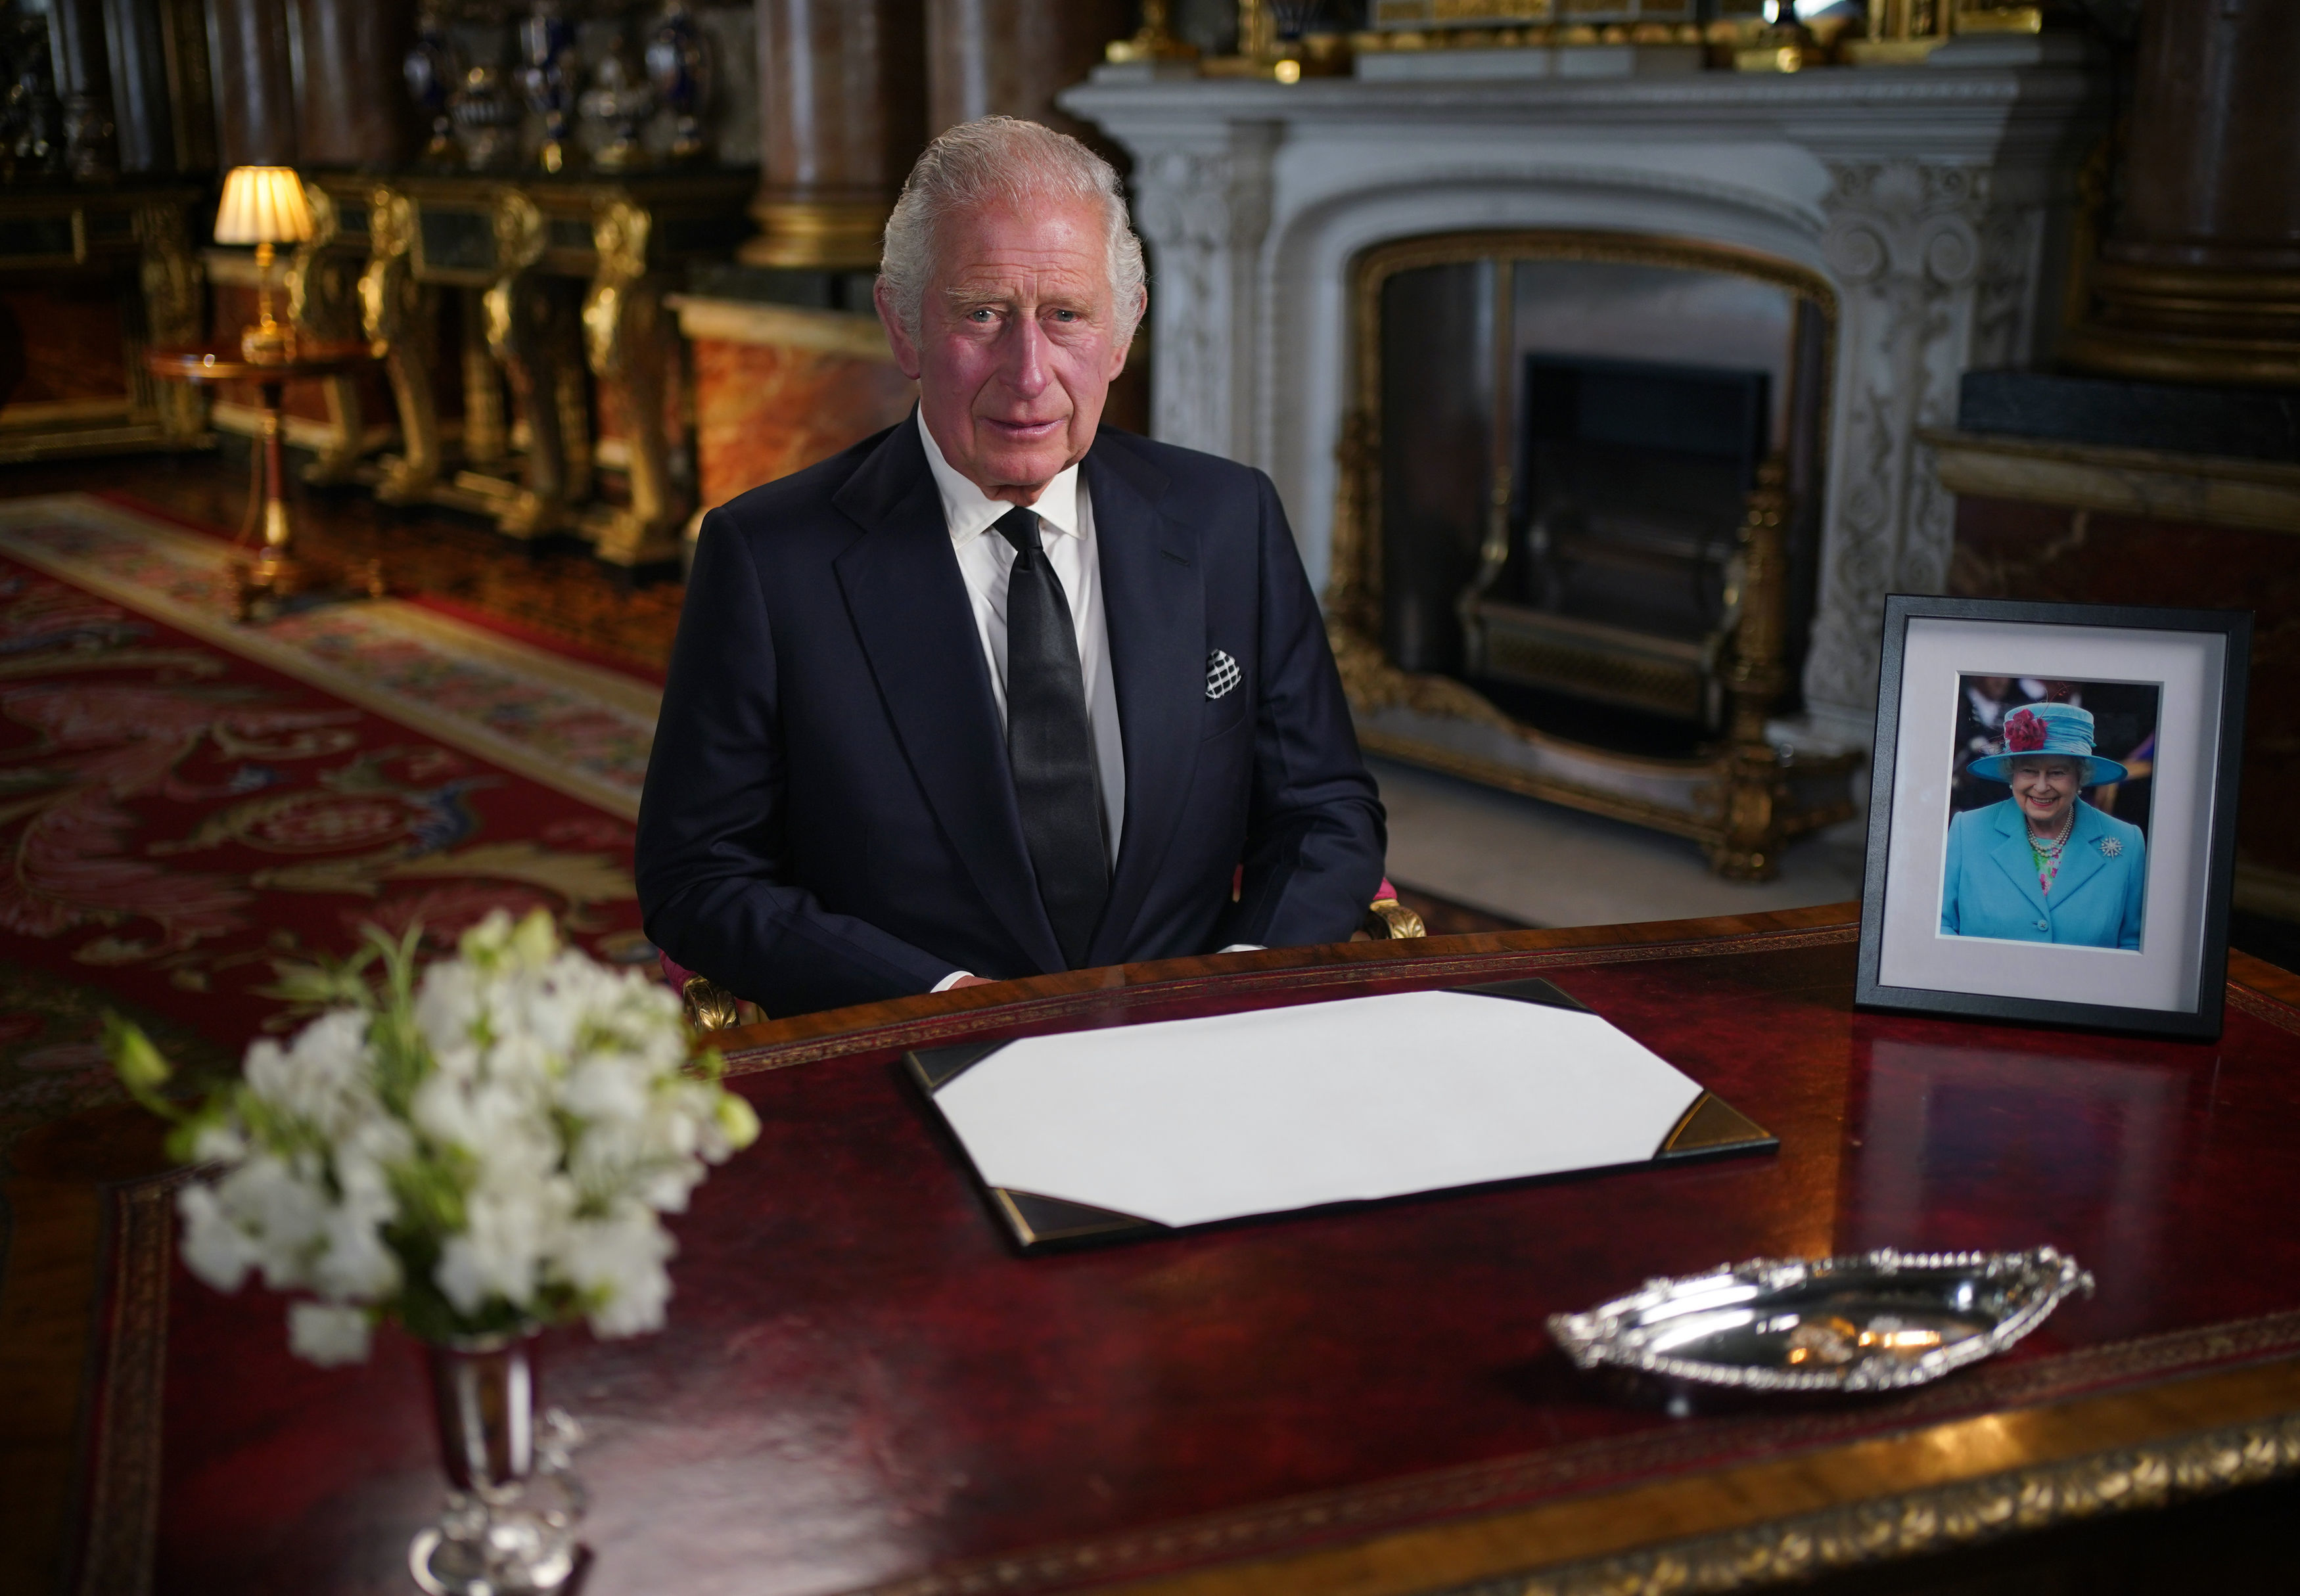 Le roi Charles III prononce son discours à la nation et au Commonwealth depuis le palais de Buckingham suite au décès de la reine Élisabeth II le jeudi 8 septembre à Balmoral, le 9 septembre 2022 à Londres, Angleterre | Source : Getty Images